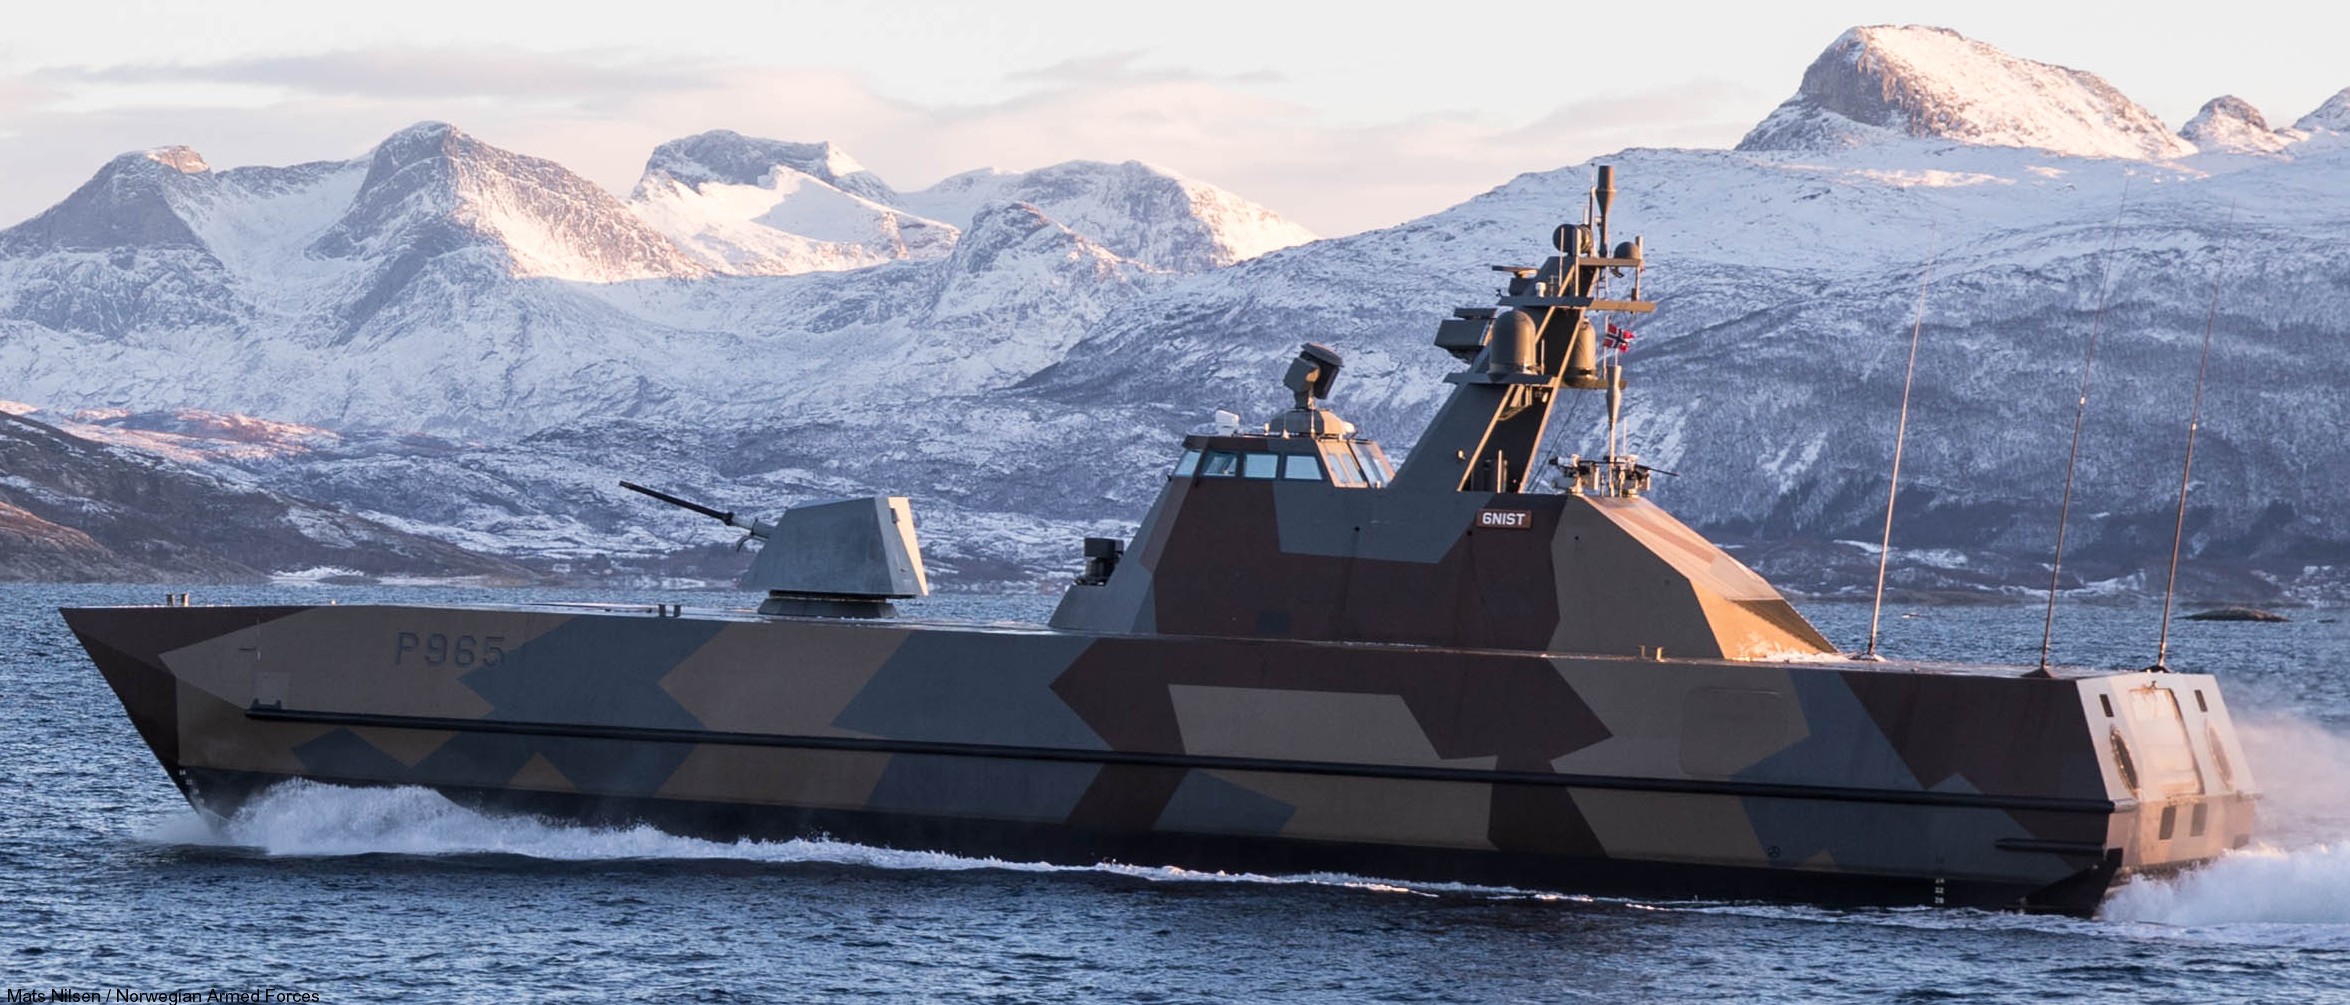 p-965 hnoms gnist knm skjold class corvette royal norwegian navy sjoforsvaret umoe mandal 07x